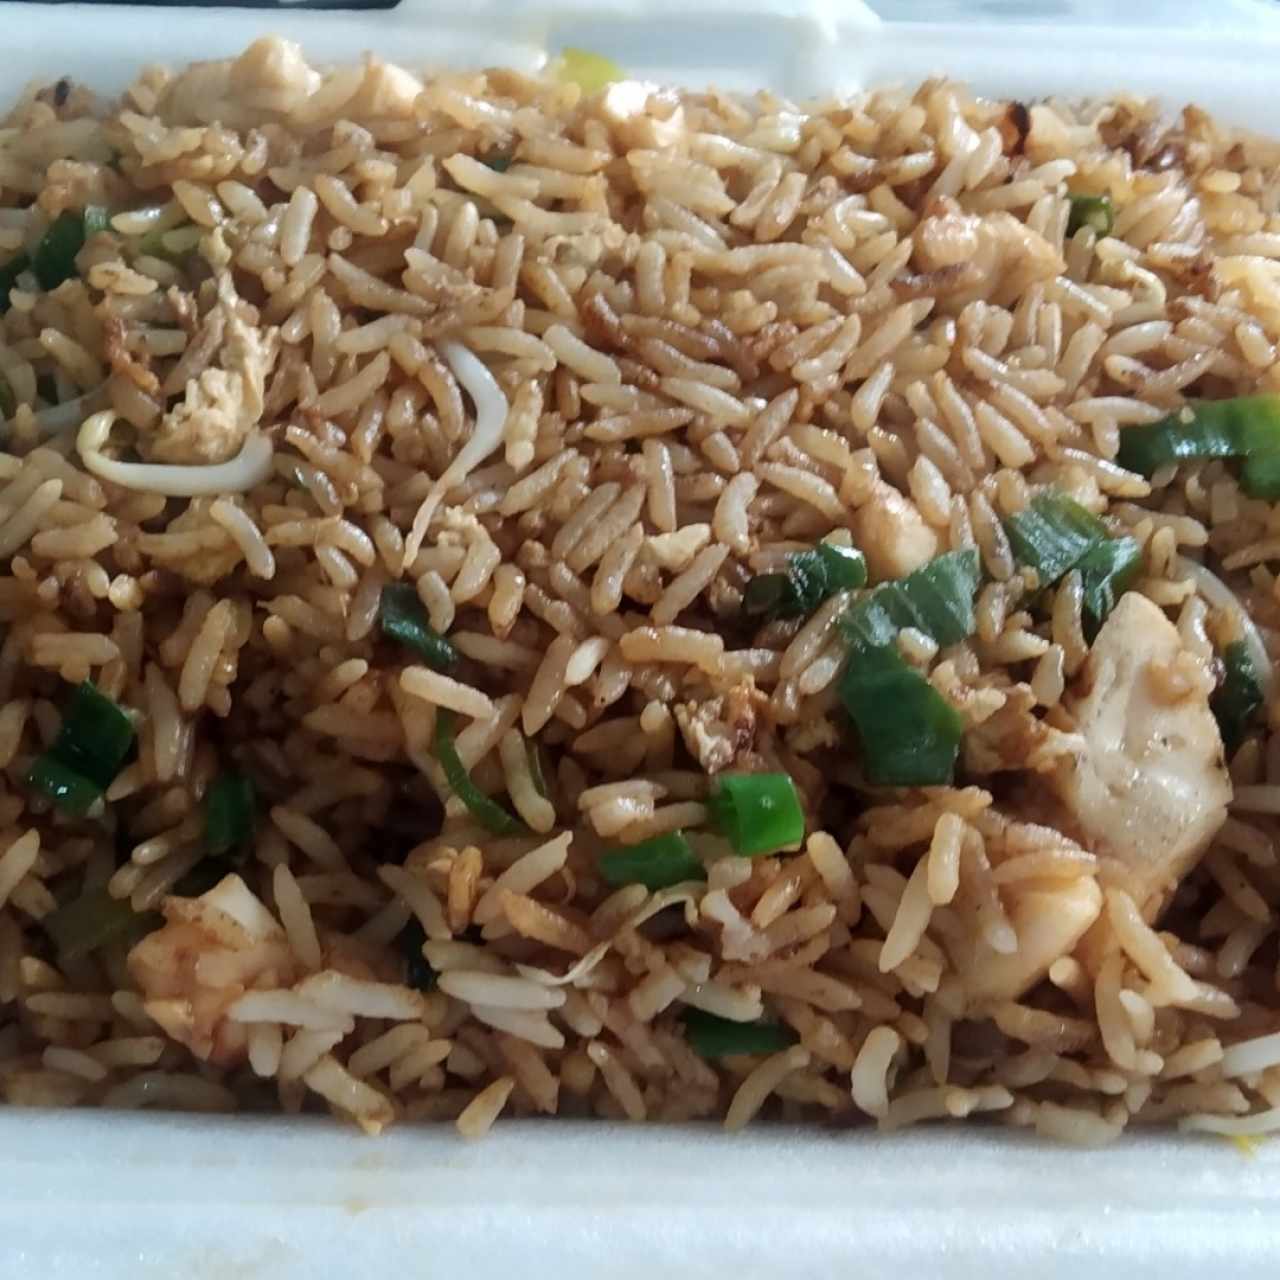 arroz y frito con pollo (delivery)